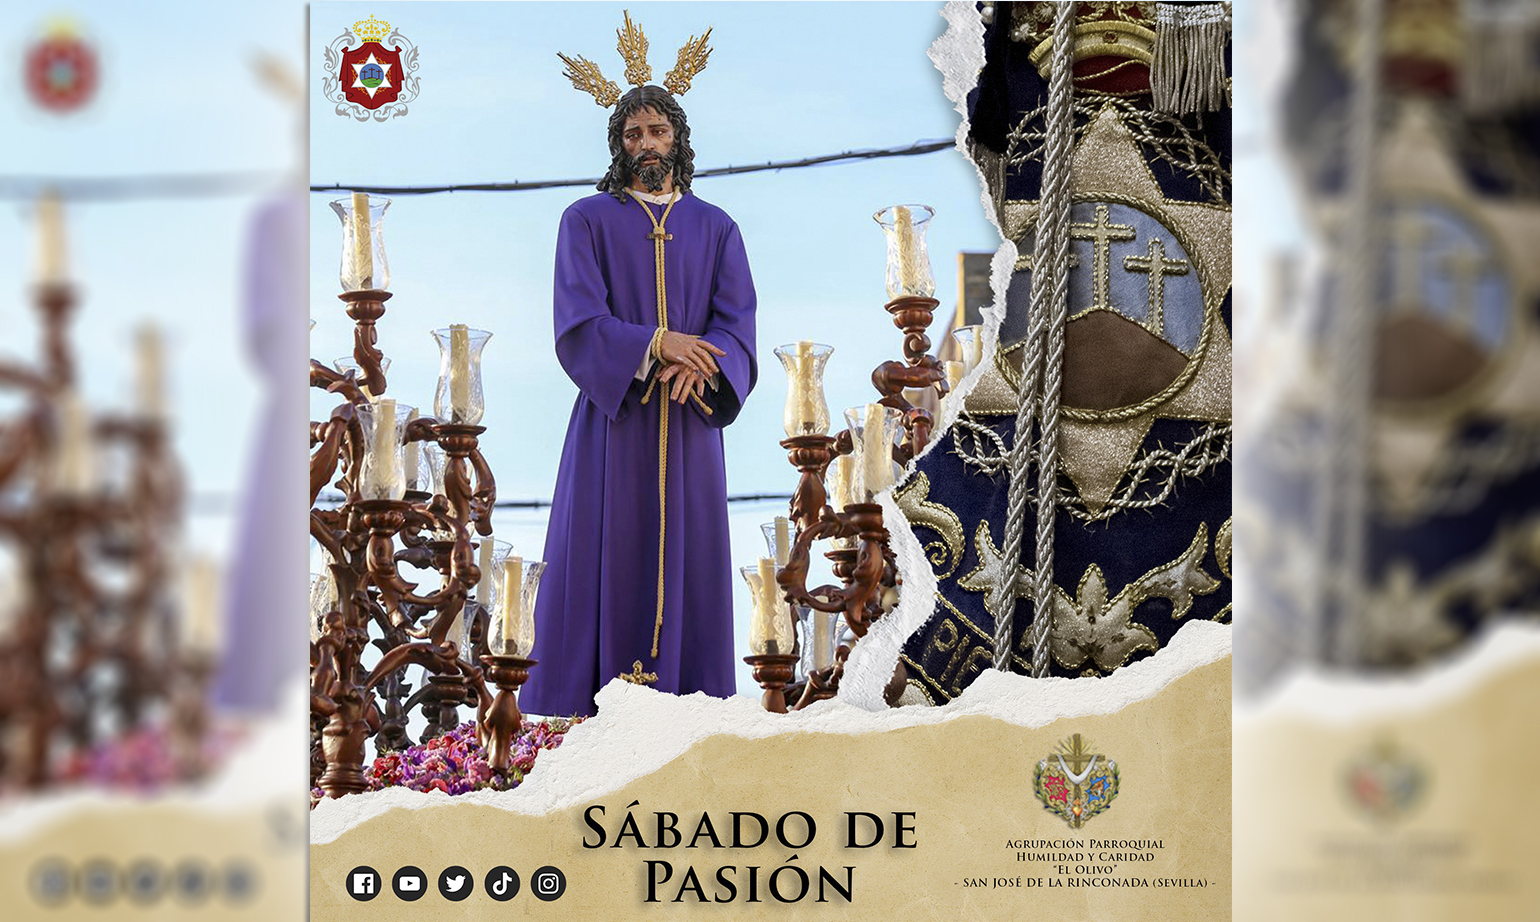 Nuestro próximo Sábado de Pasión será de Humildad y Caridad en San José de la Rinconada (Sevilla)